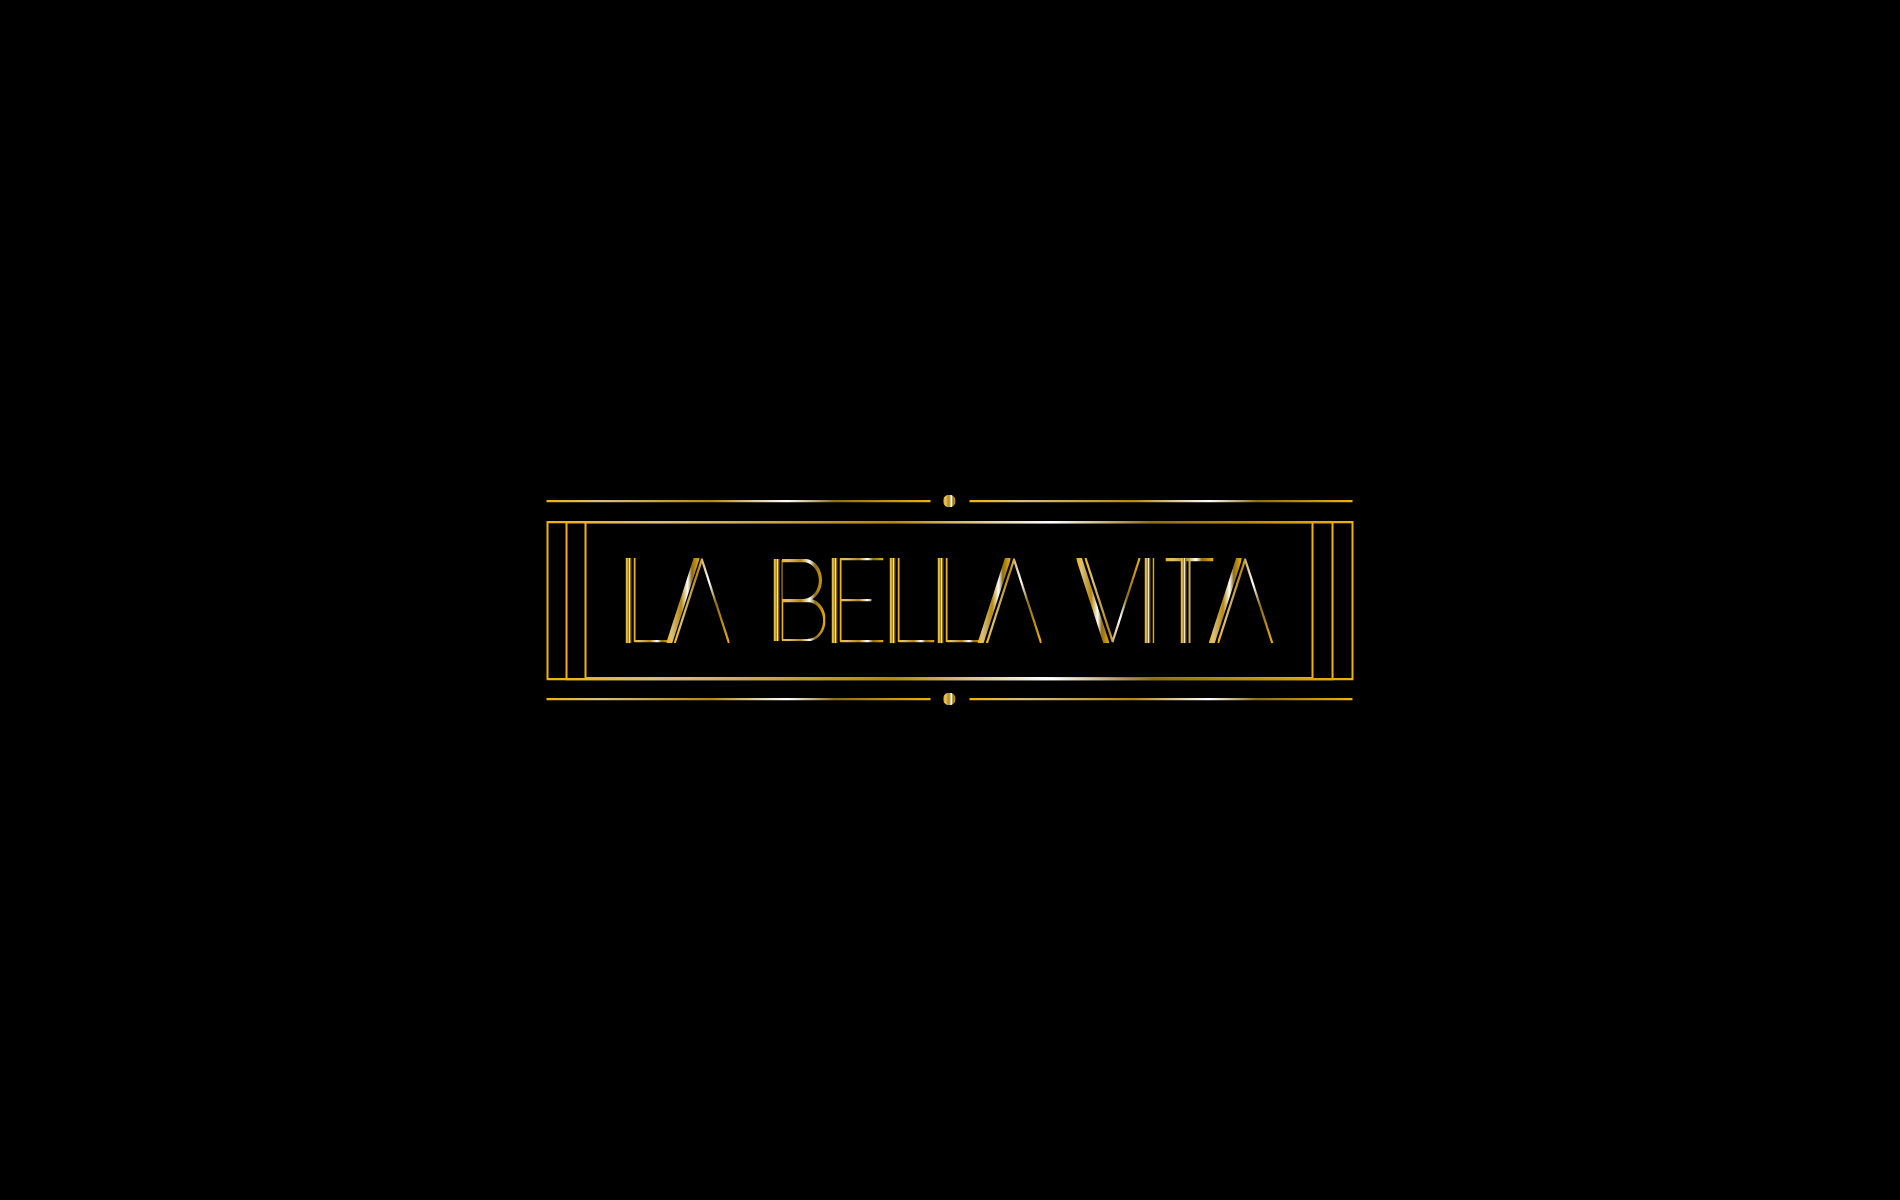 La Bella Vita Background